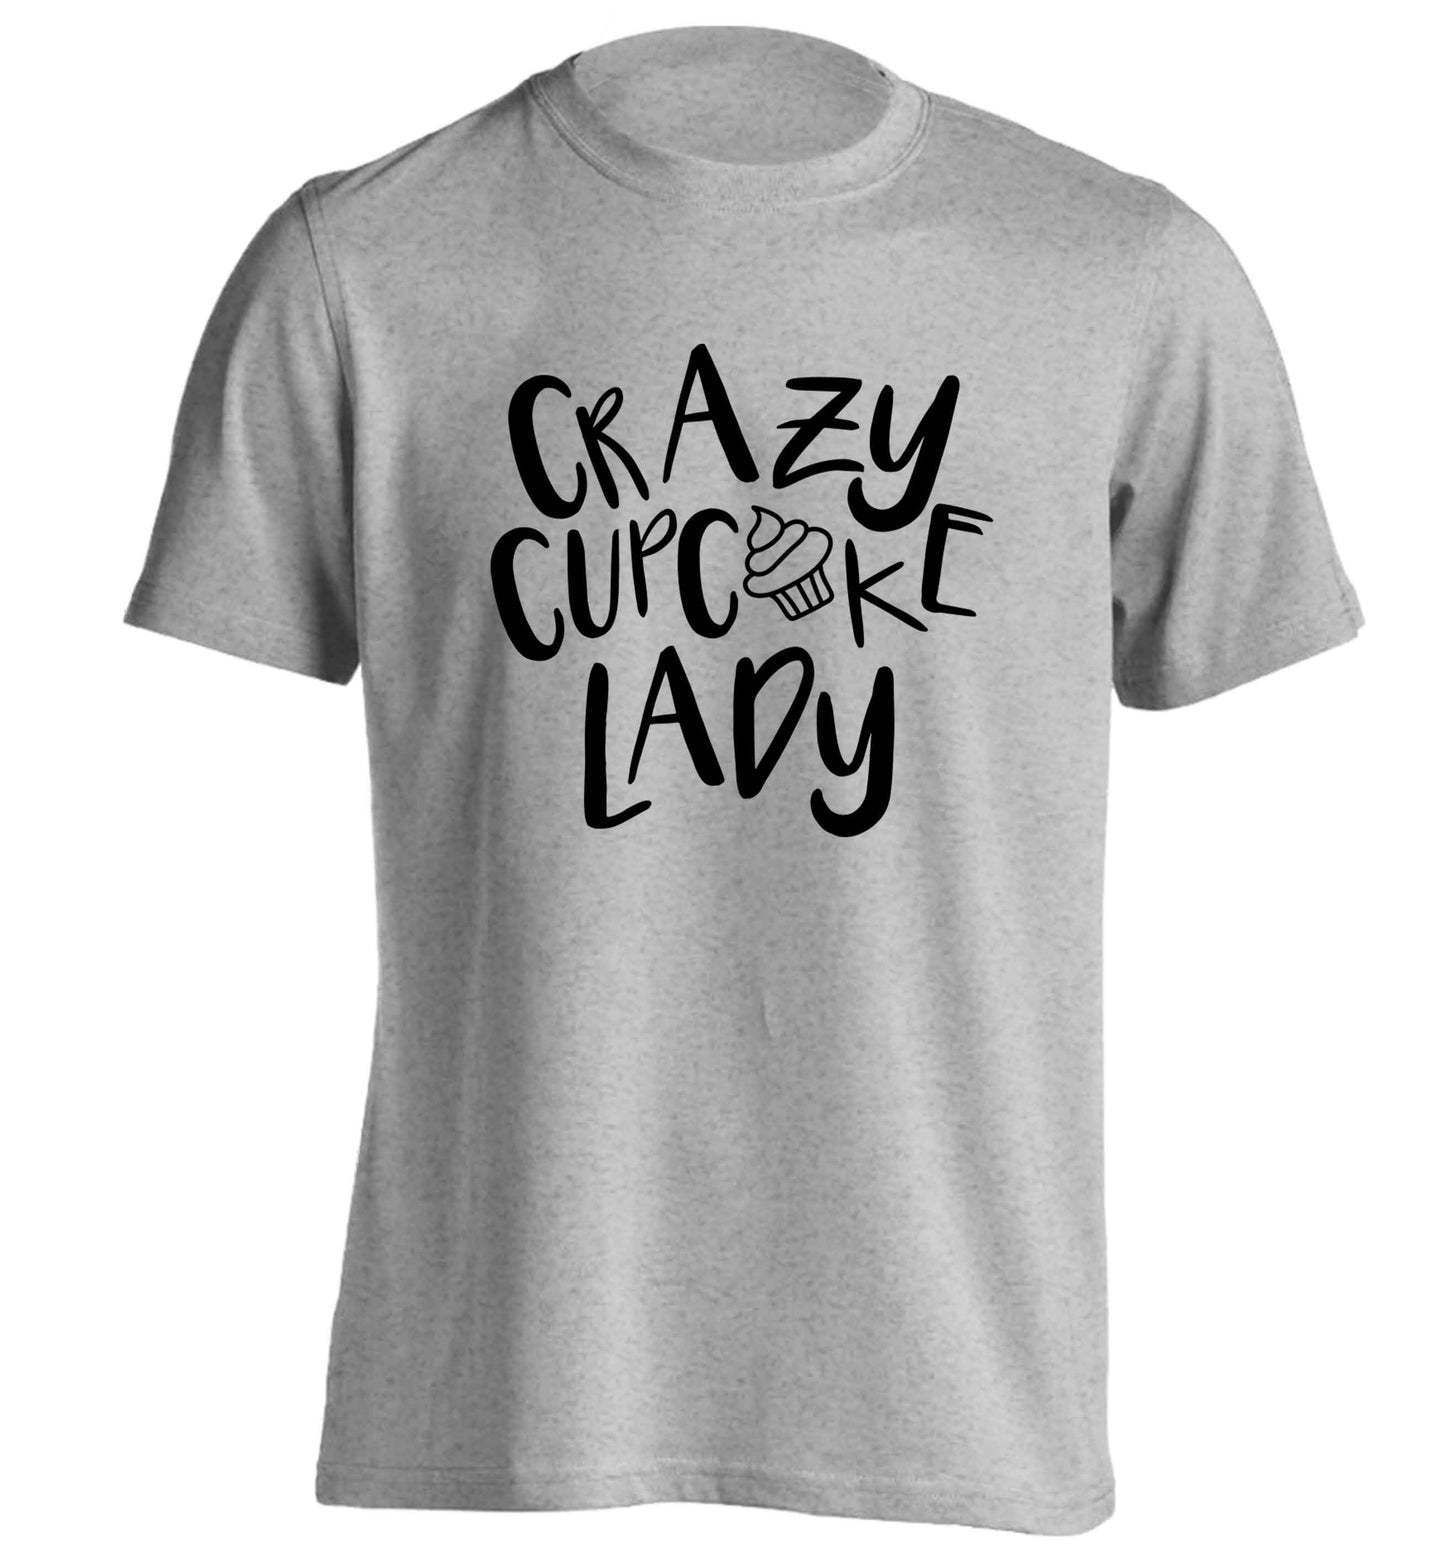 Crazy cupcake lady adults unisex grey Tshirt 2XL